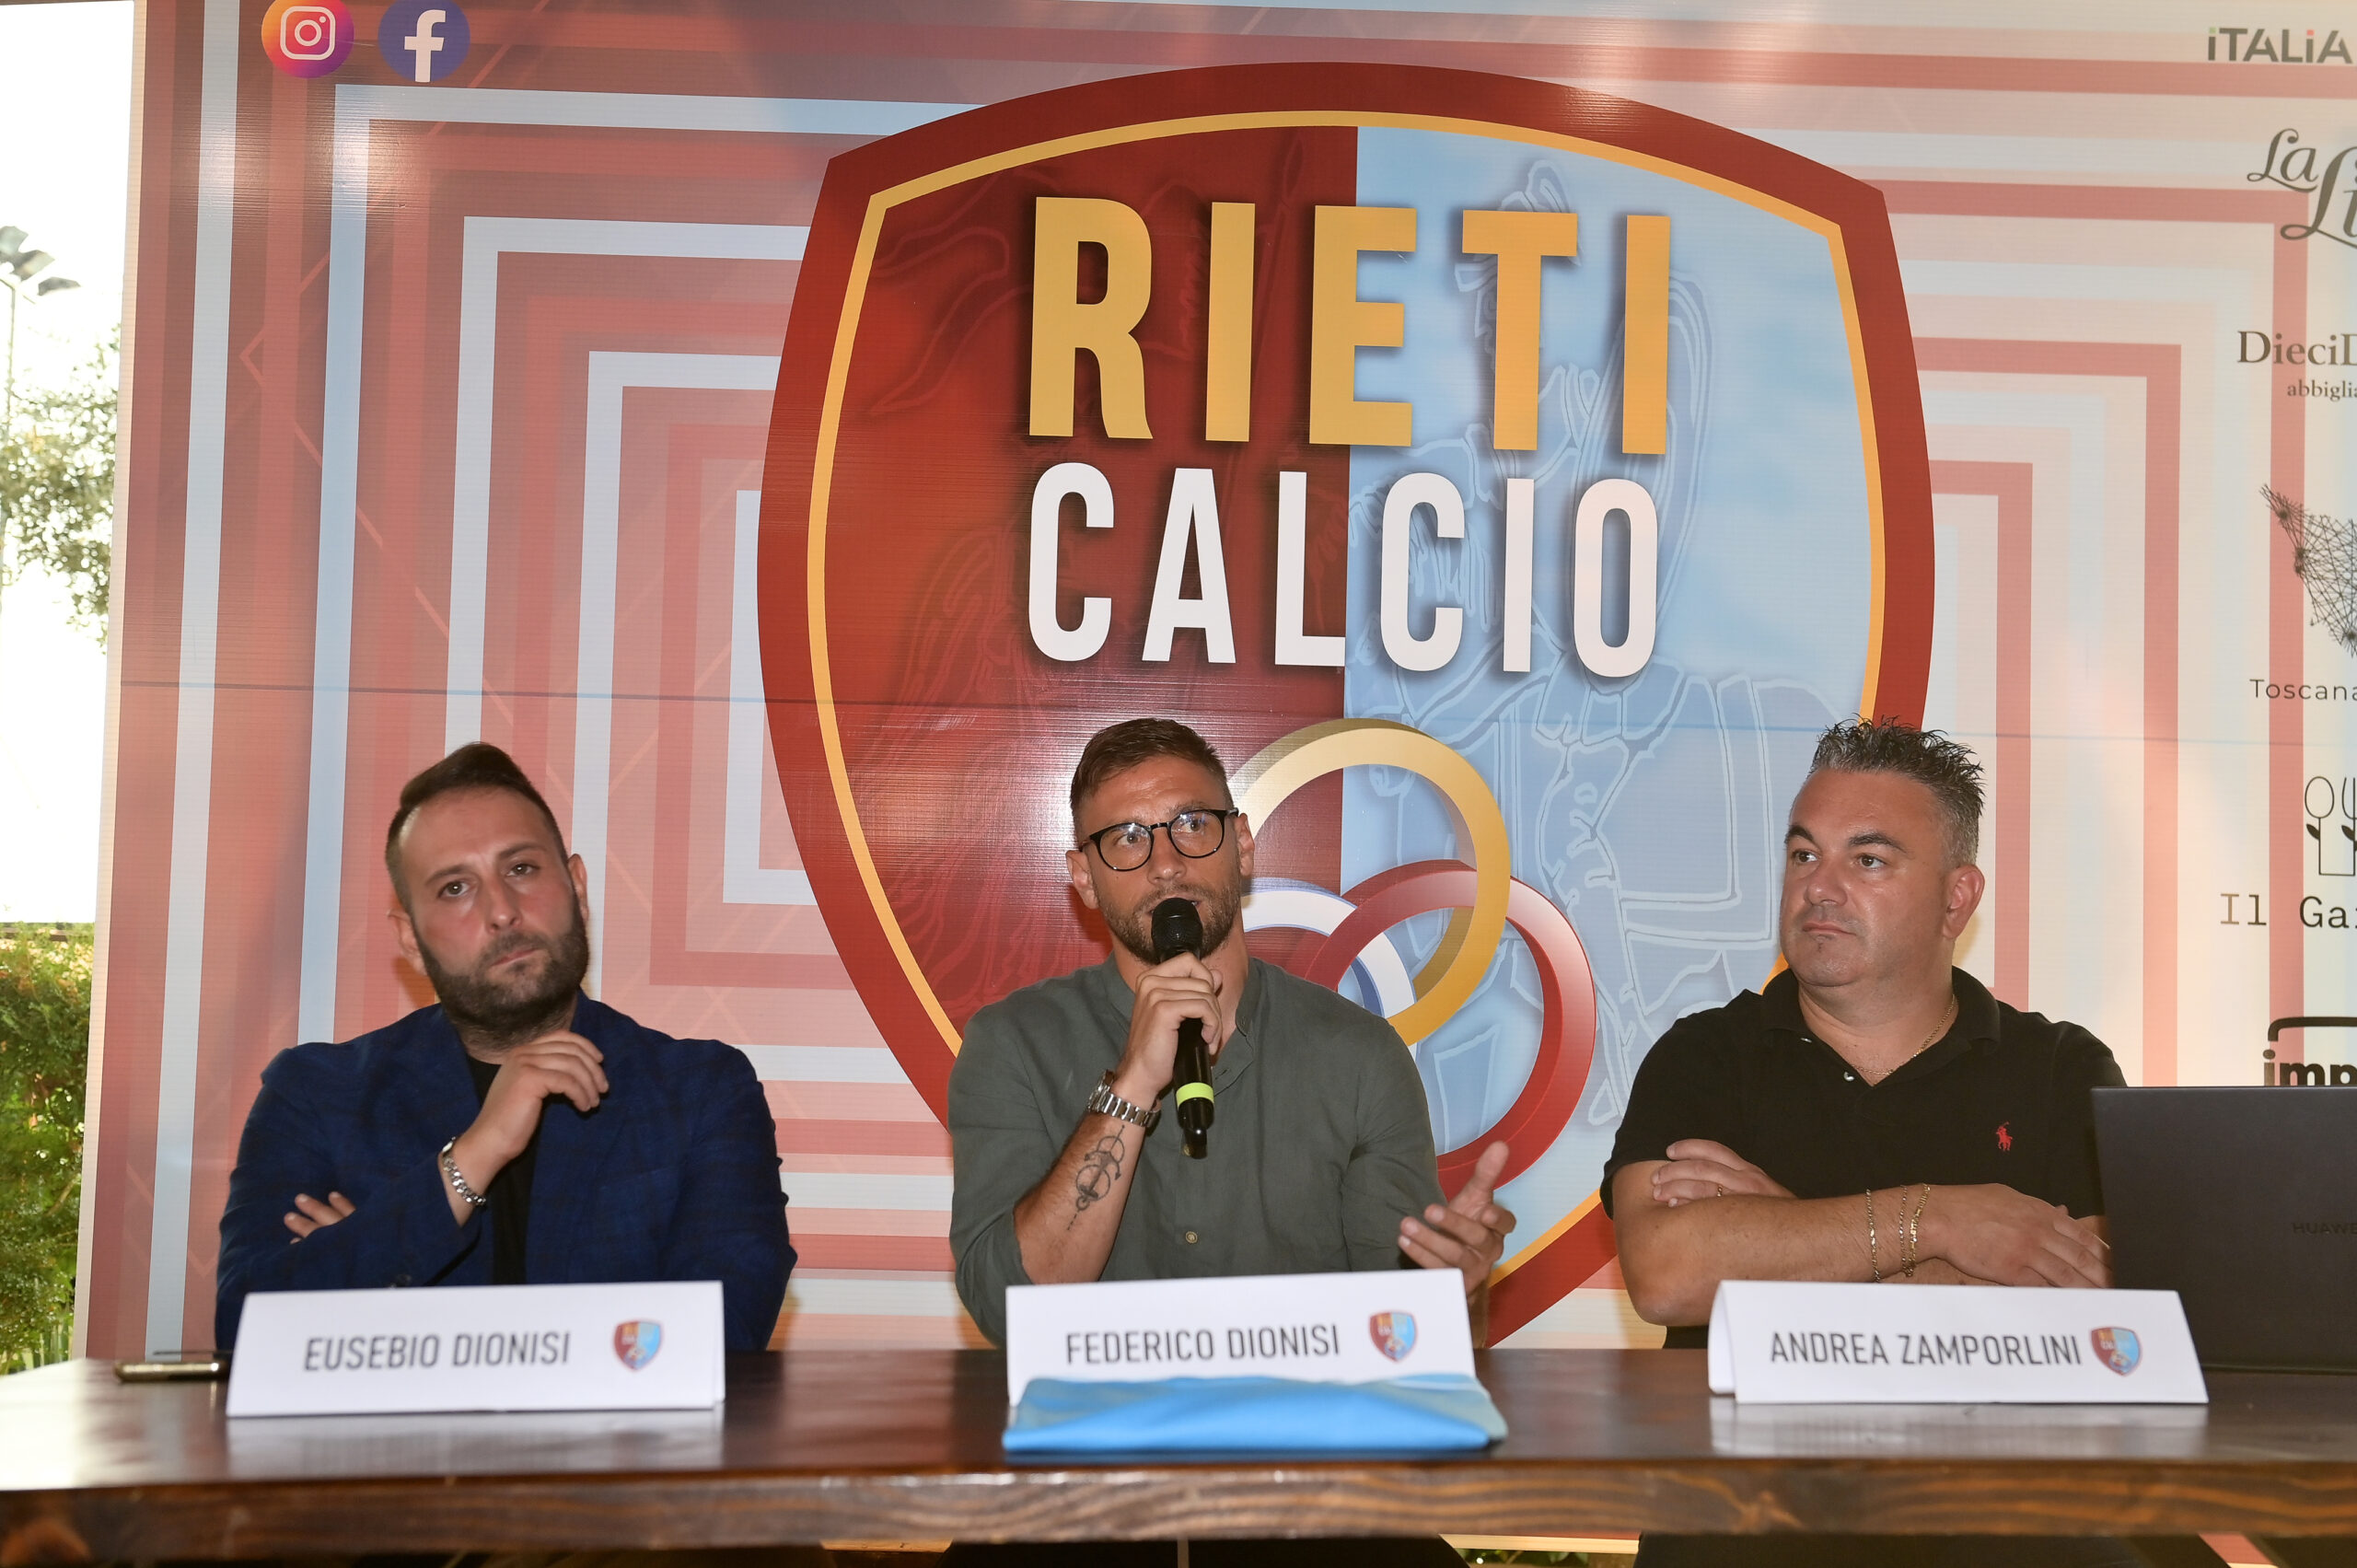 Presentato il progetto della Nuova Rieti Calcio. Dionisi: “Giovani, professionalità del territorio e trasparenza saranno alla base”